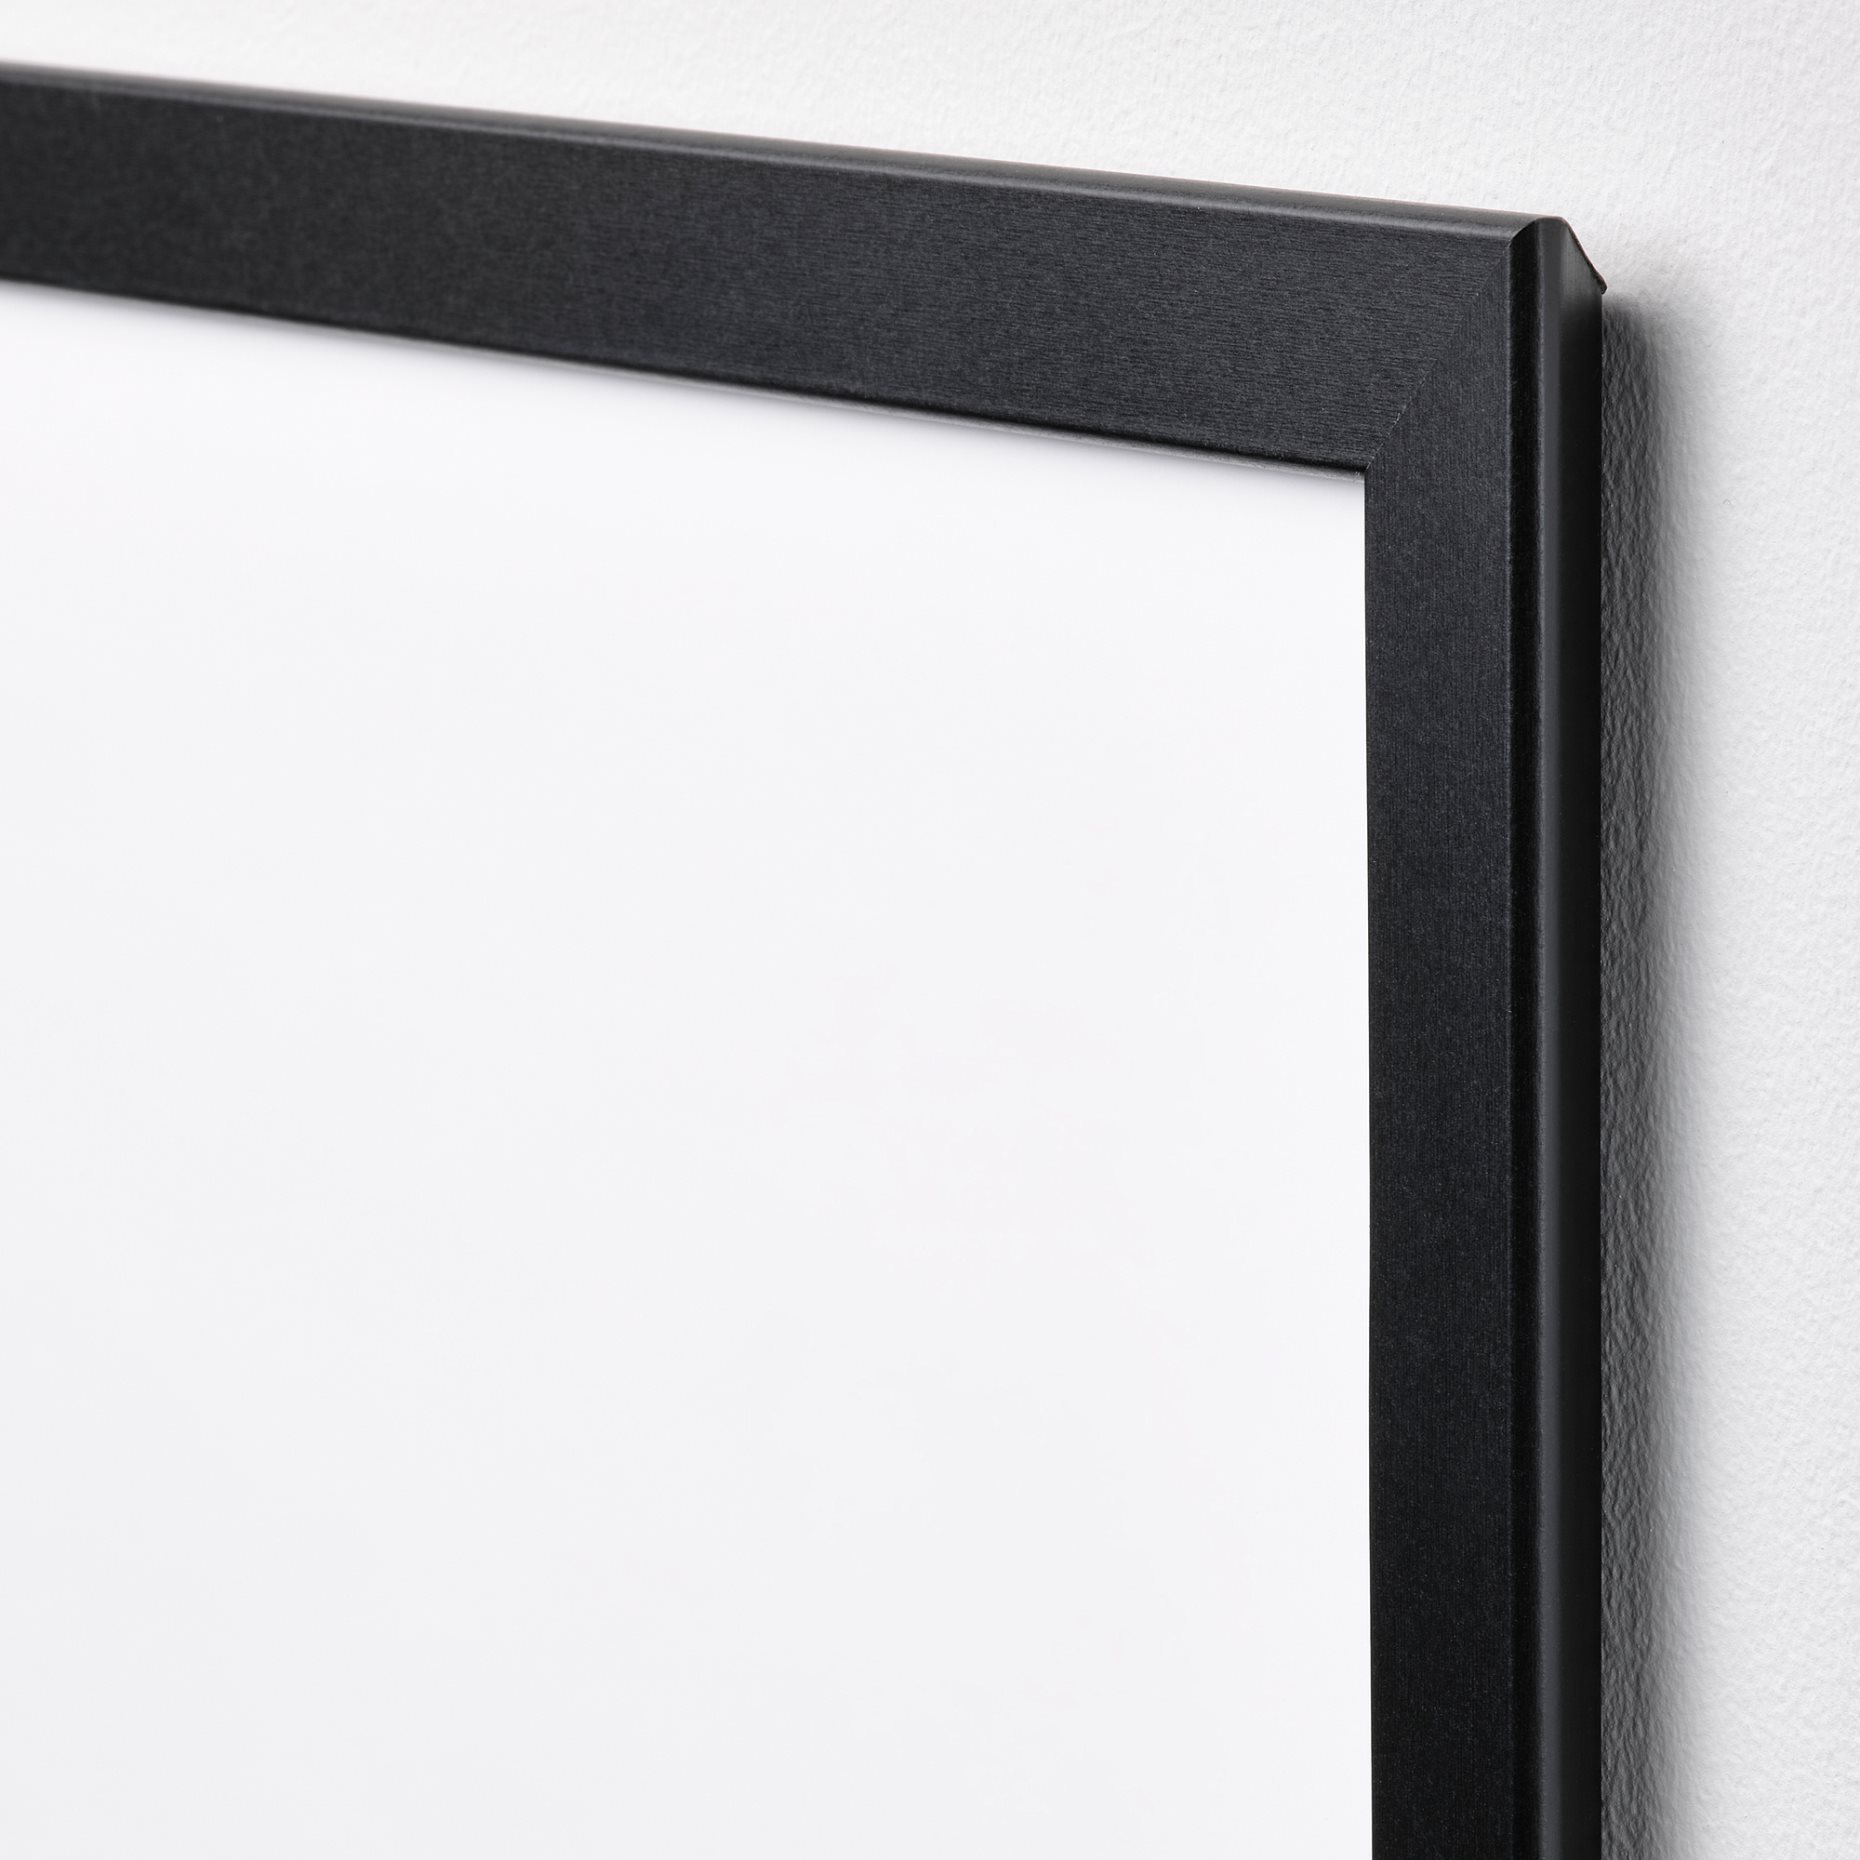 FISKBO, frame, 30x40 cm, 502.956.60